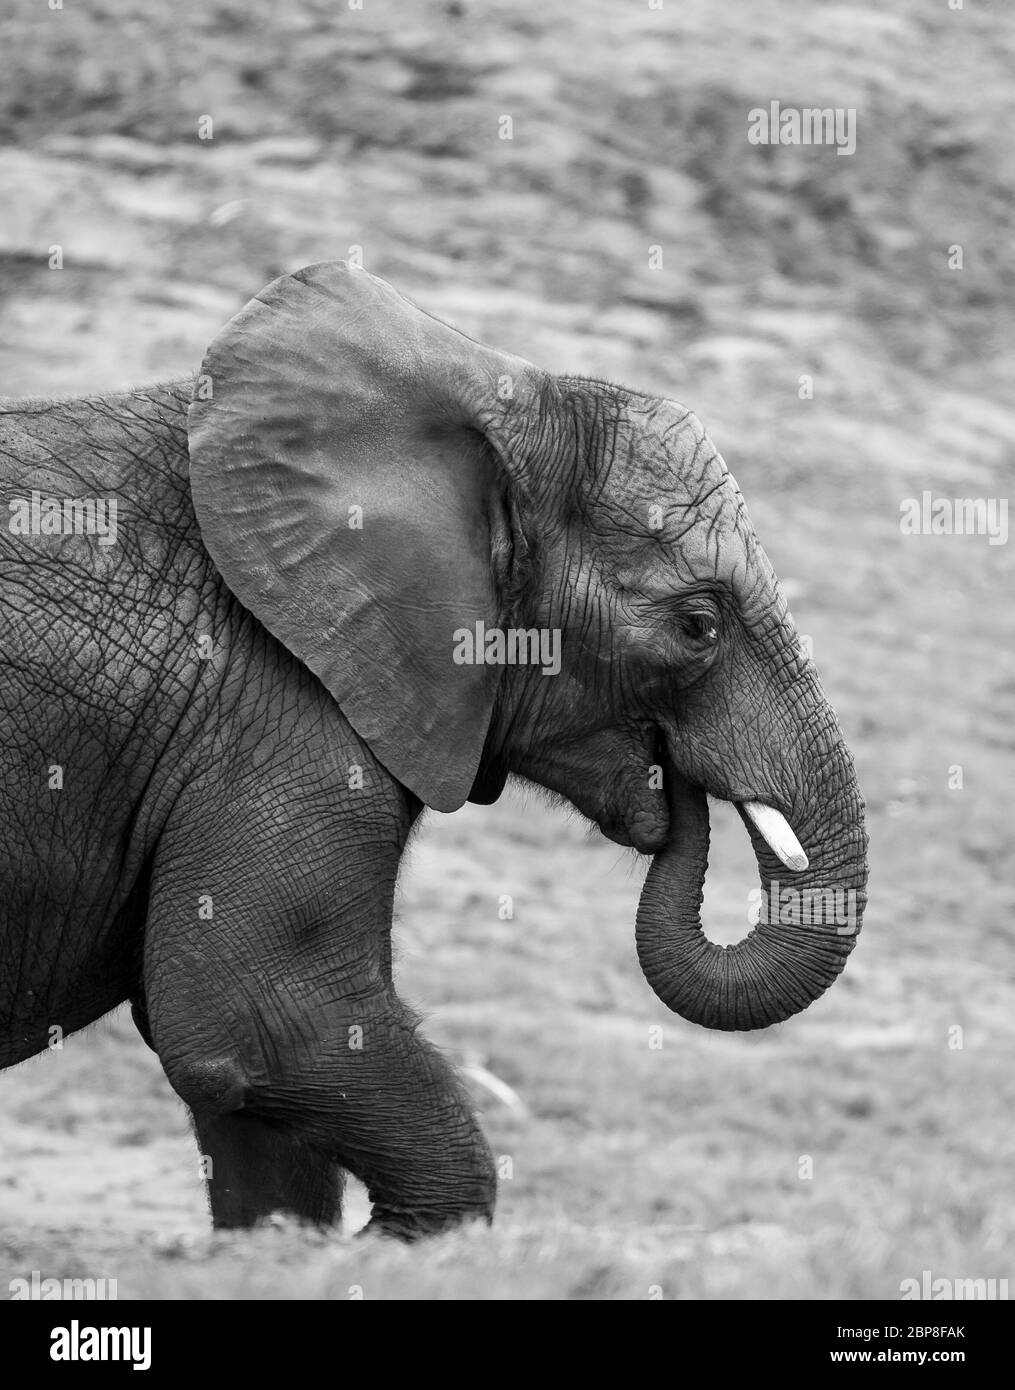 Monochrome, noir et blanc, vue latérale gros plan de l'éléphant d'Afrique isolé (Loxodonta africana) en captivité, West Midland Midlands Safari Park, Royaume-Uni. Banque D'Images